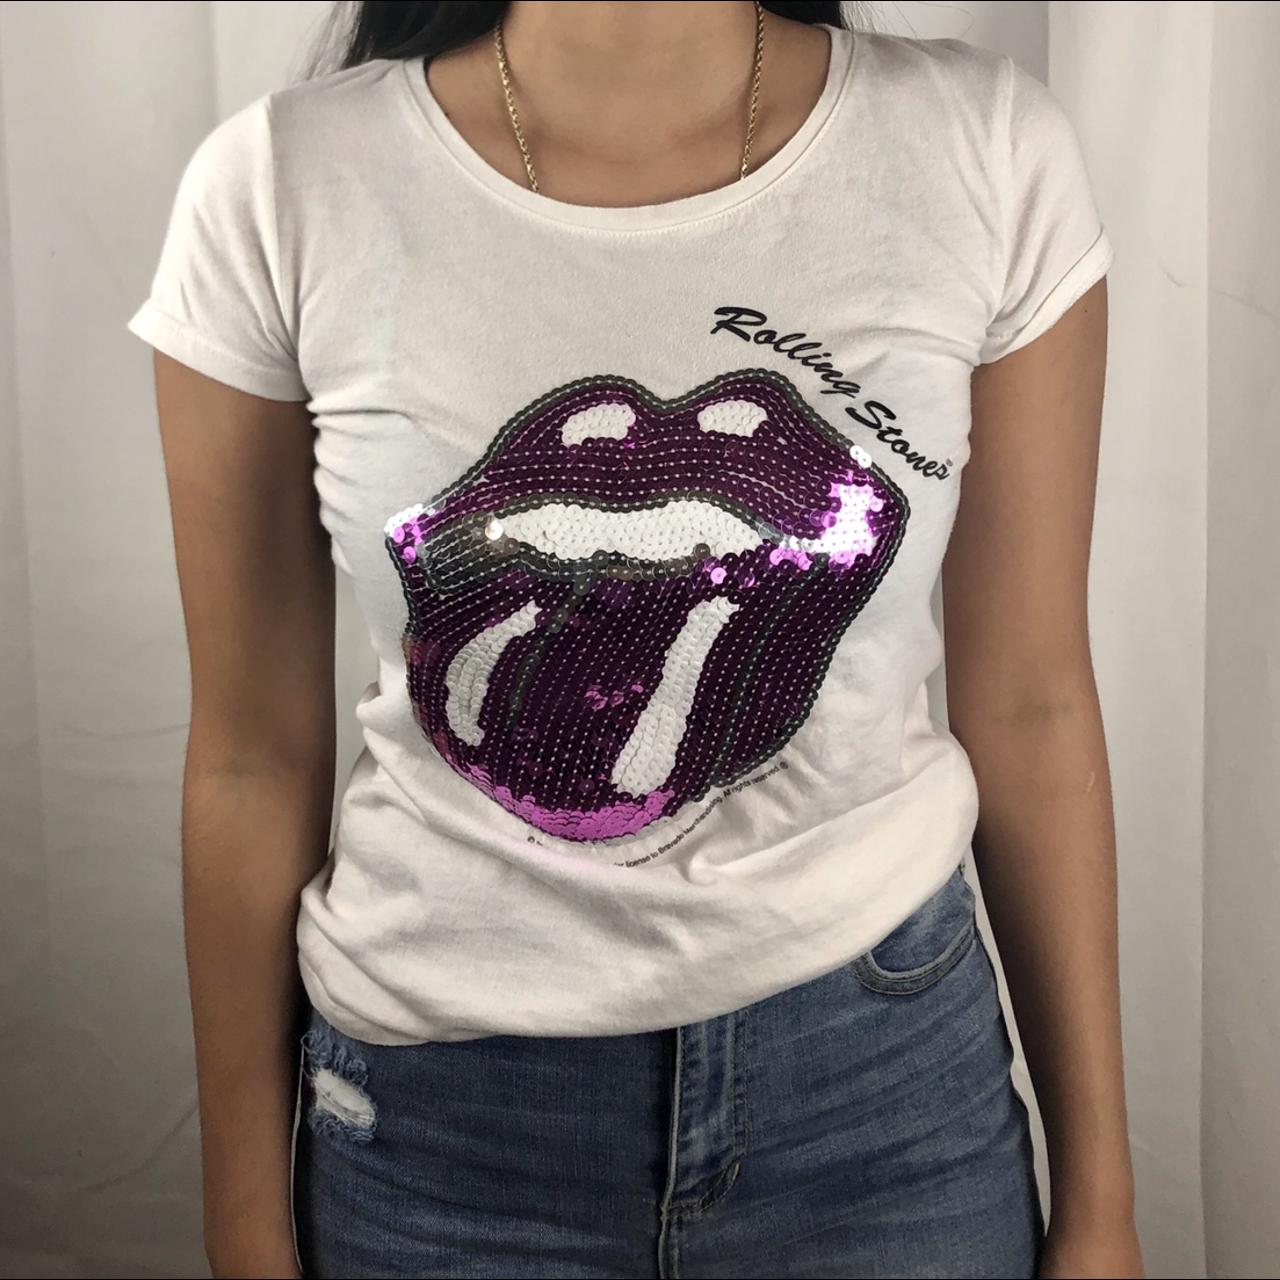 Rolling Stones sequin top tshirt Model is 5’7 and... - Depop